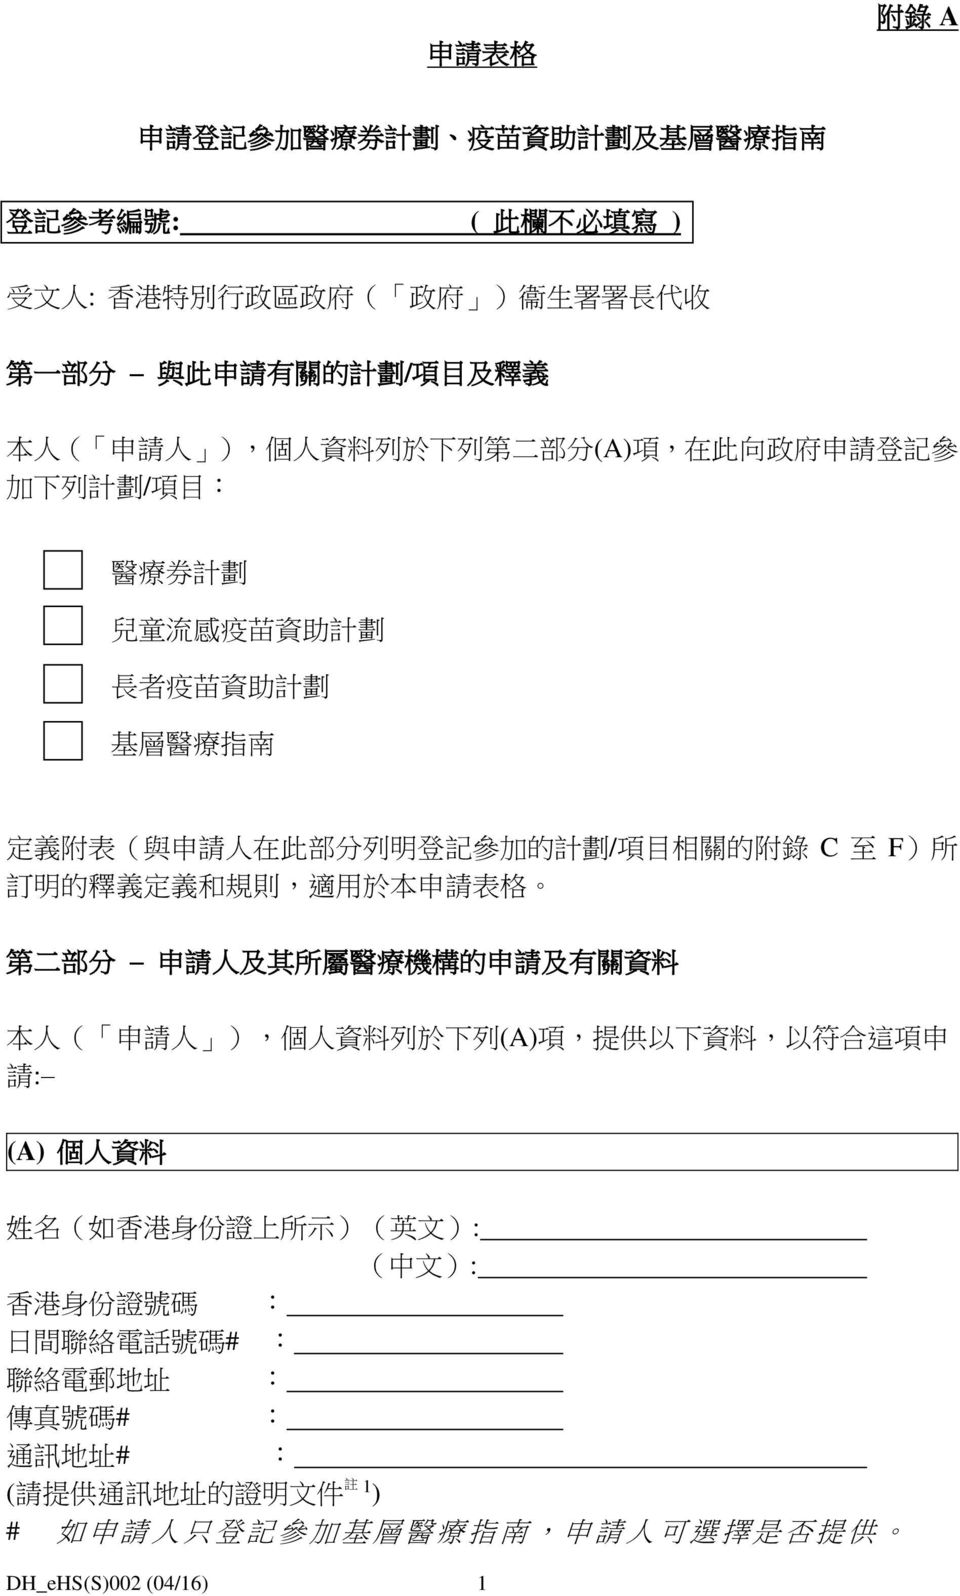 所 訂 明 的 釋 義 定 義 和 規 則, 適 用 於 本 申 請 表 格 第 二 部 分 申 請 人 及 其 所 屬 醫 療 機 構 的 申 請 及 有 關 資 料 本 人 ( 申 請 人 ), 個 人 資 料 列 於 下 列 (A) 項, 提 供 以 下 資 料, 以 符 合 這 項 申 請 : (A) 個 人 資 料 姓 名 ( 如 香 港 身 份 證 上 所 示 )( 英